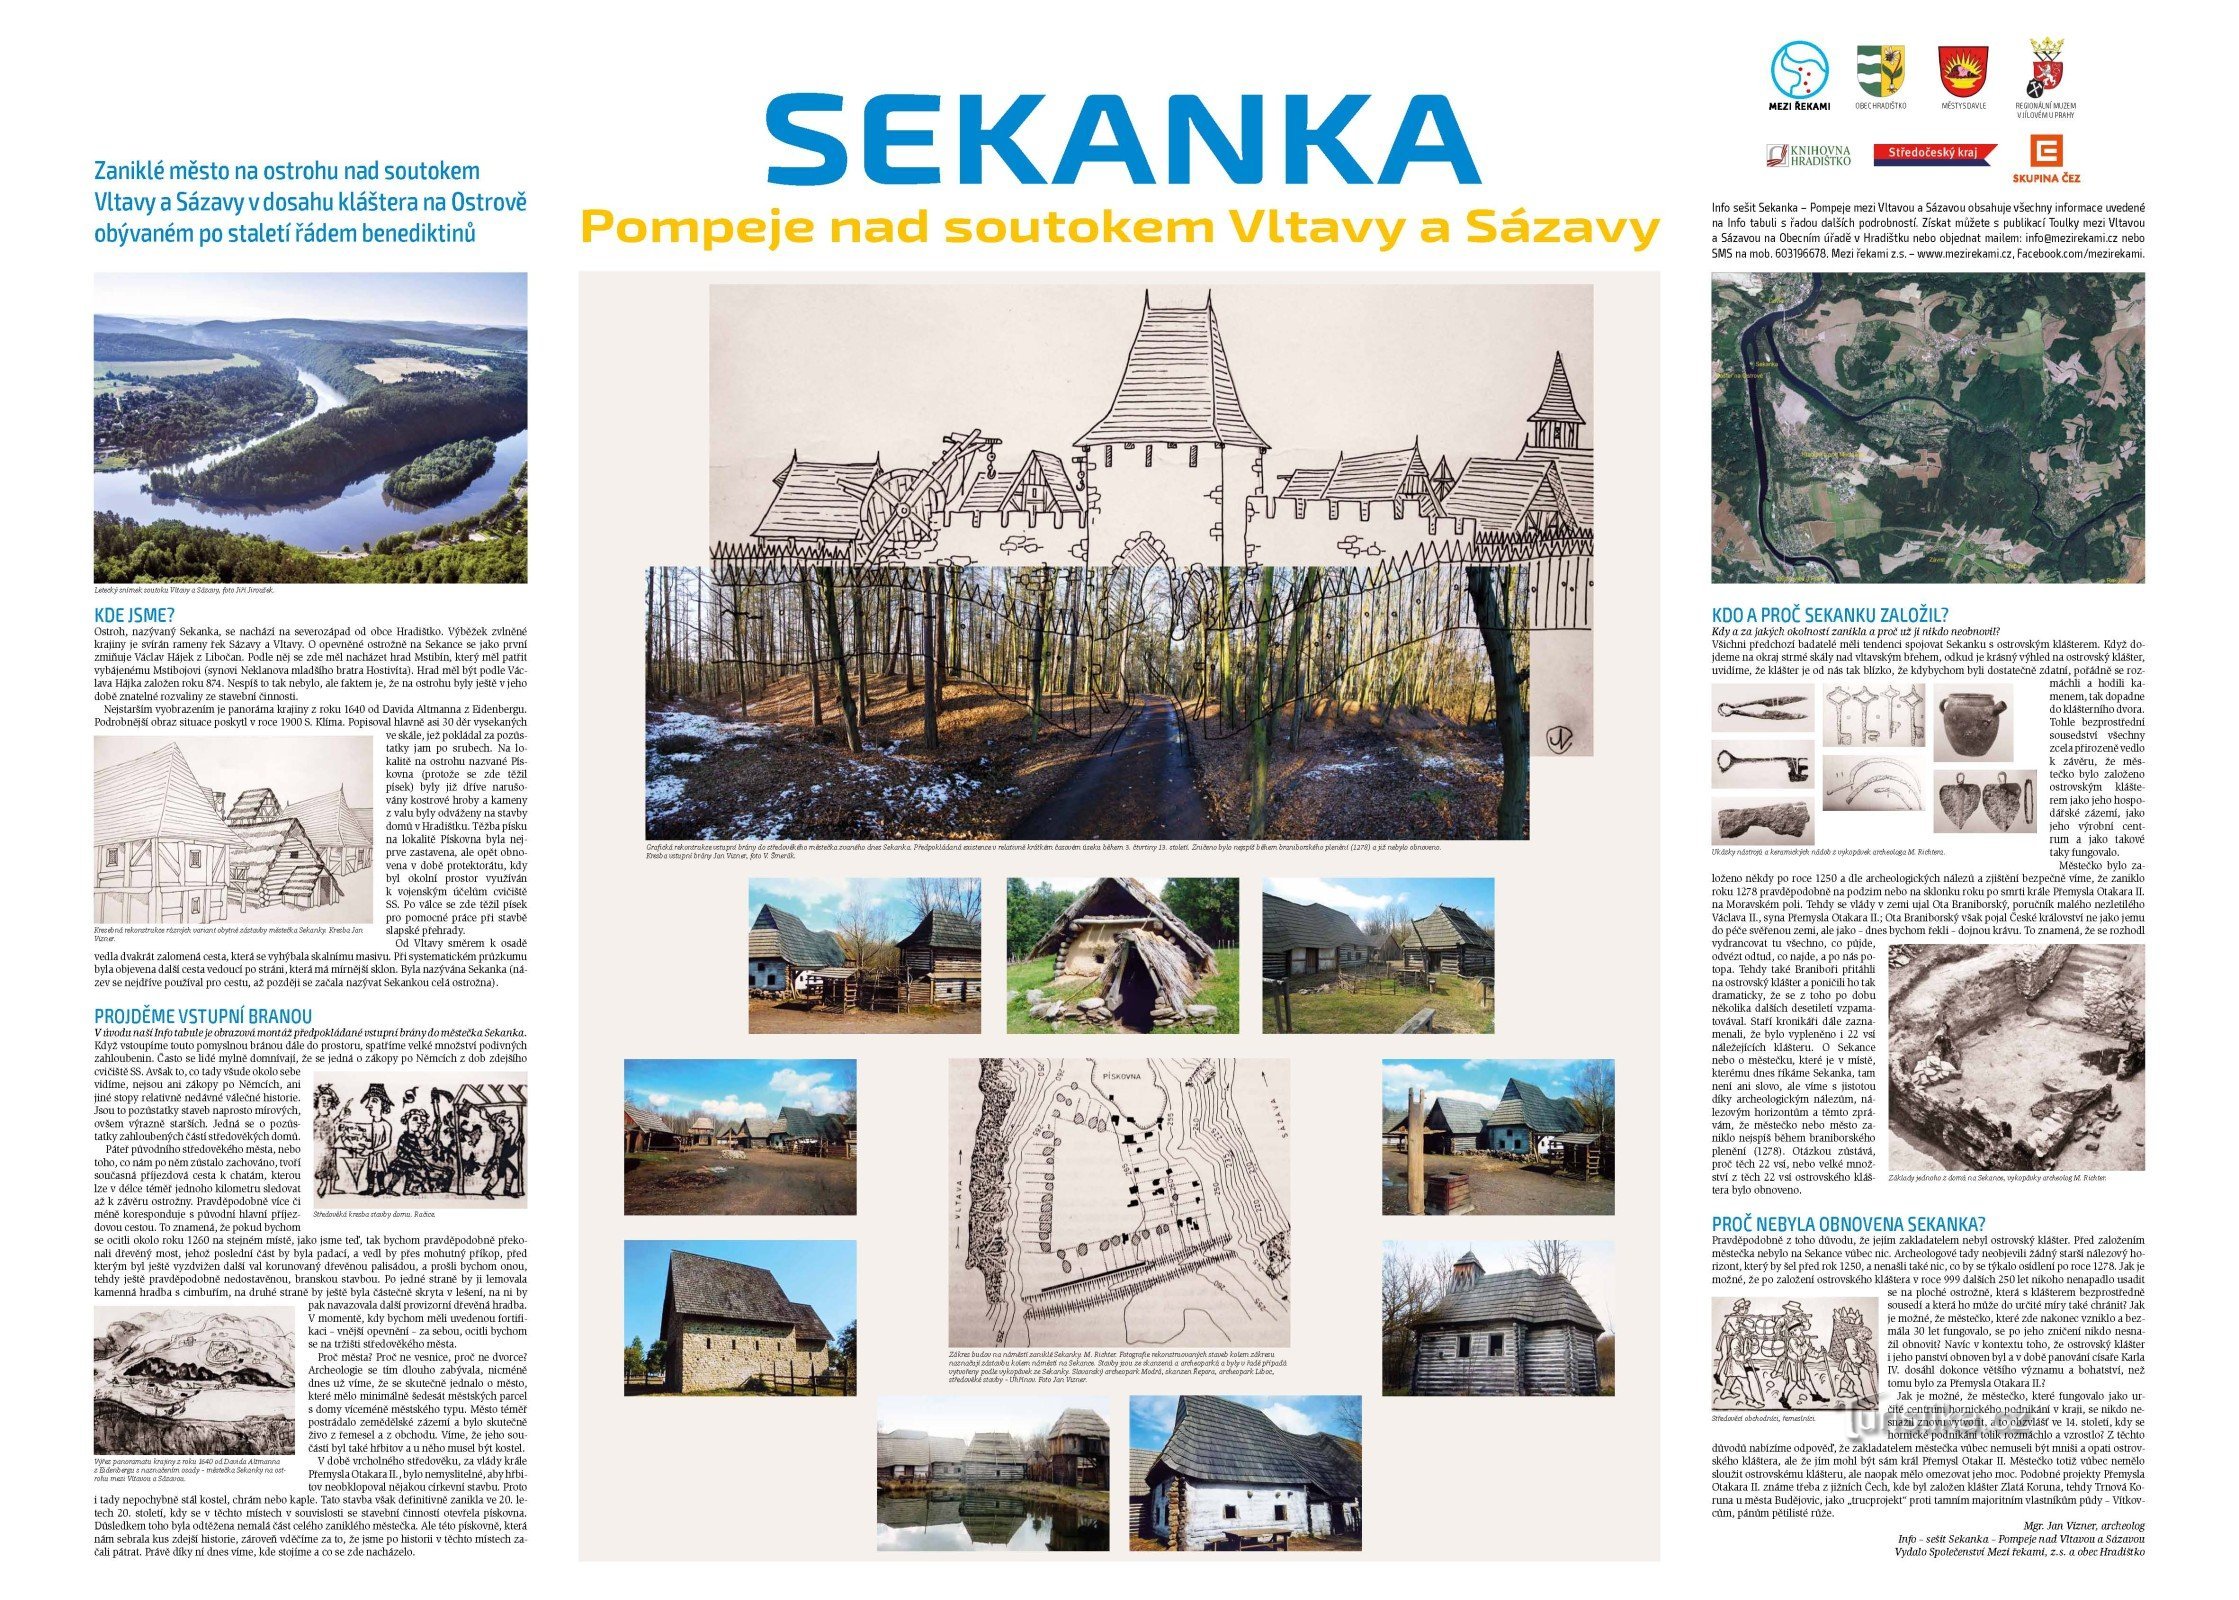 セカンカの歴史を伝えるインフォパネル